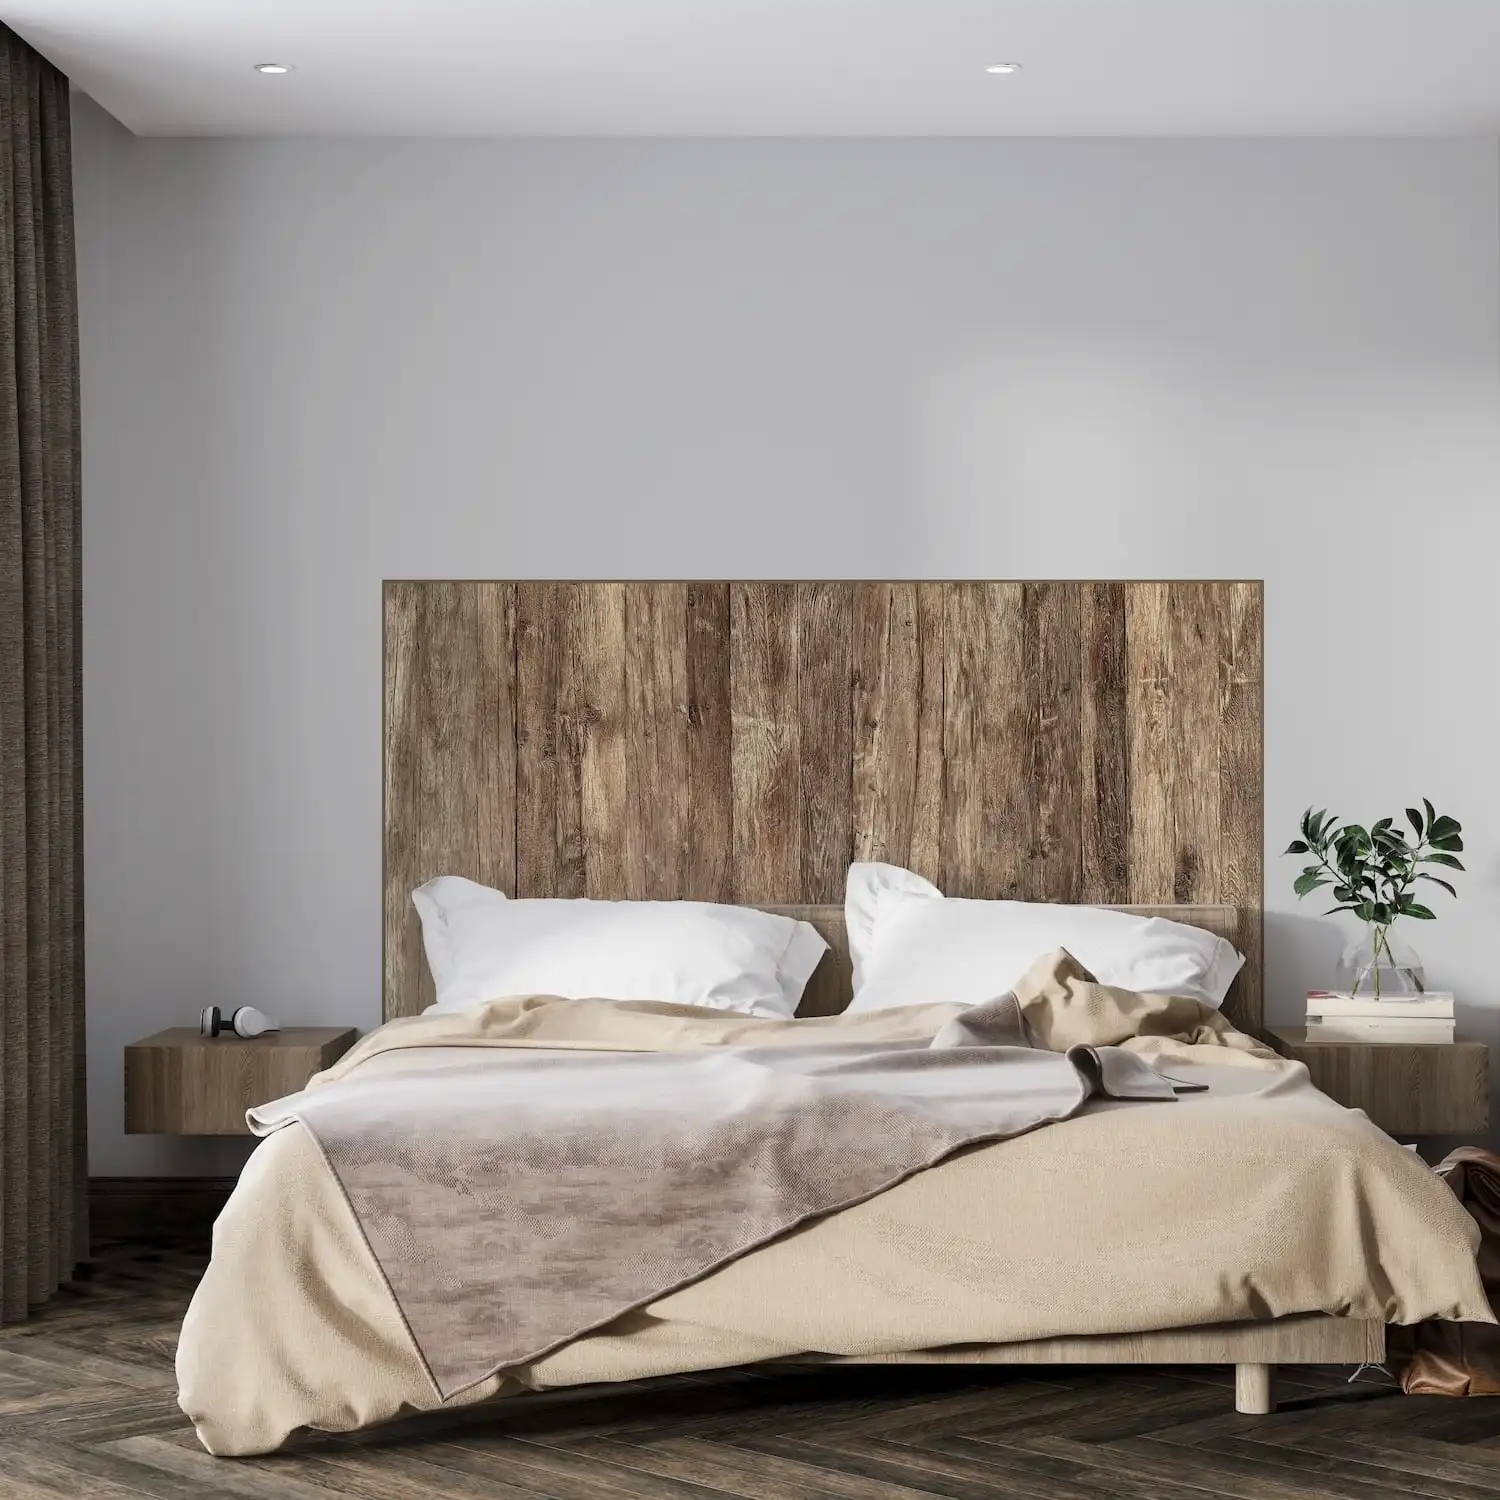  Une chambre minimaliste avec une tête de lit rustique en bois et une literie aux tons neutres. 